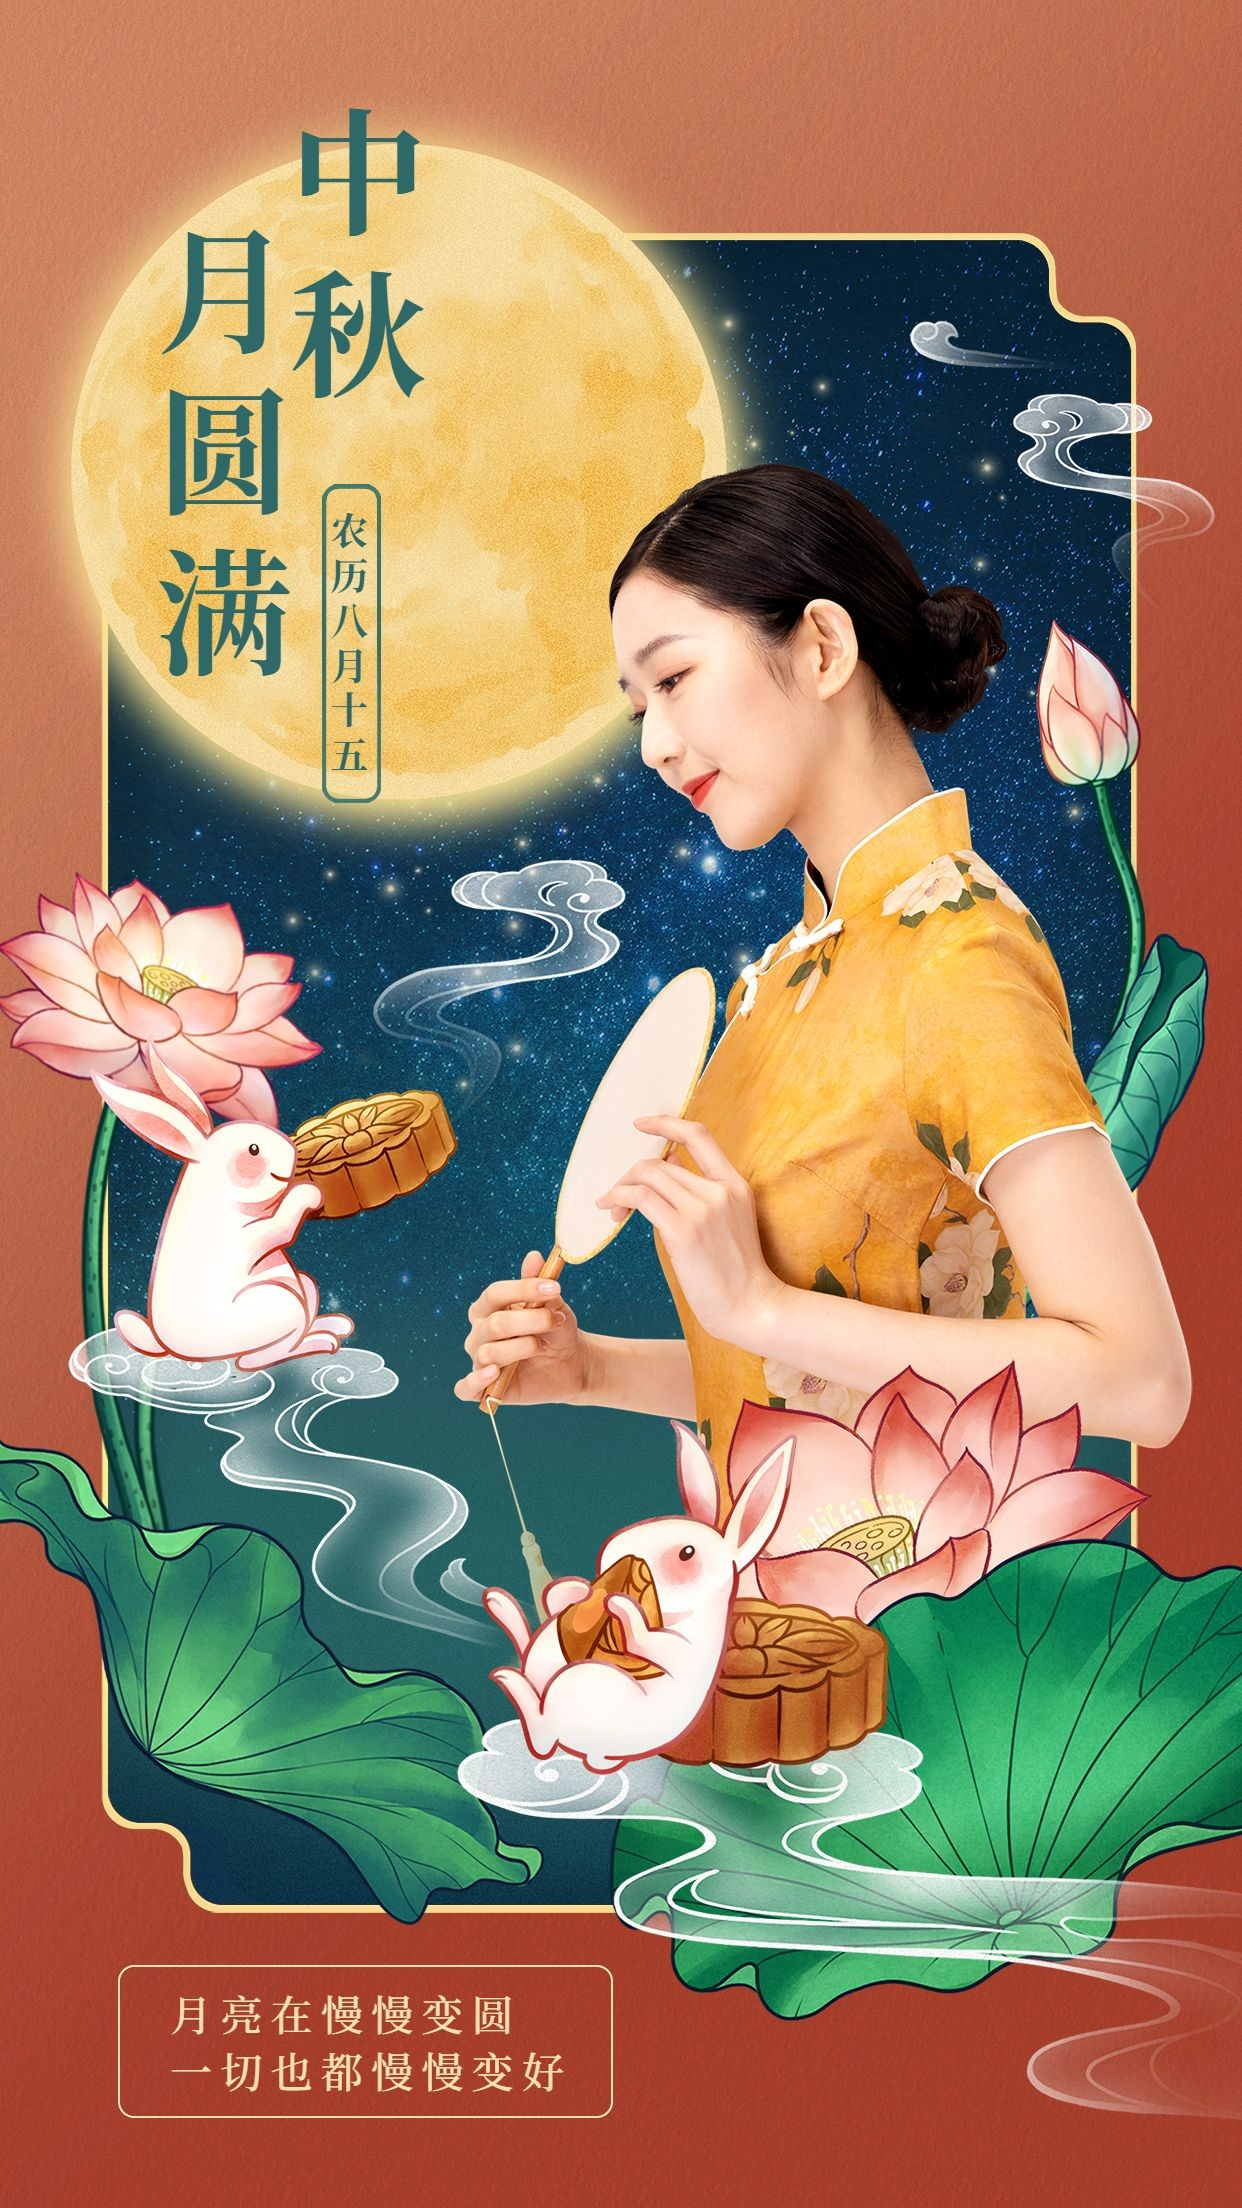 中秋节节日祝福人物晒照中国风手机海报预览效果